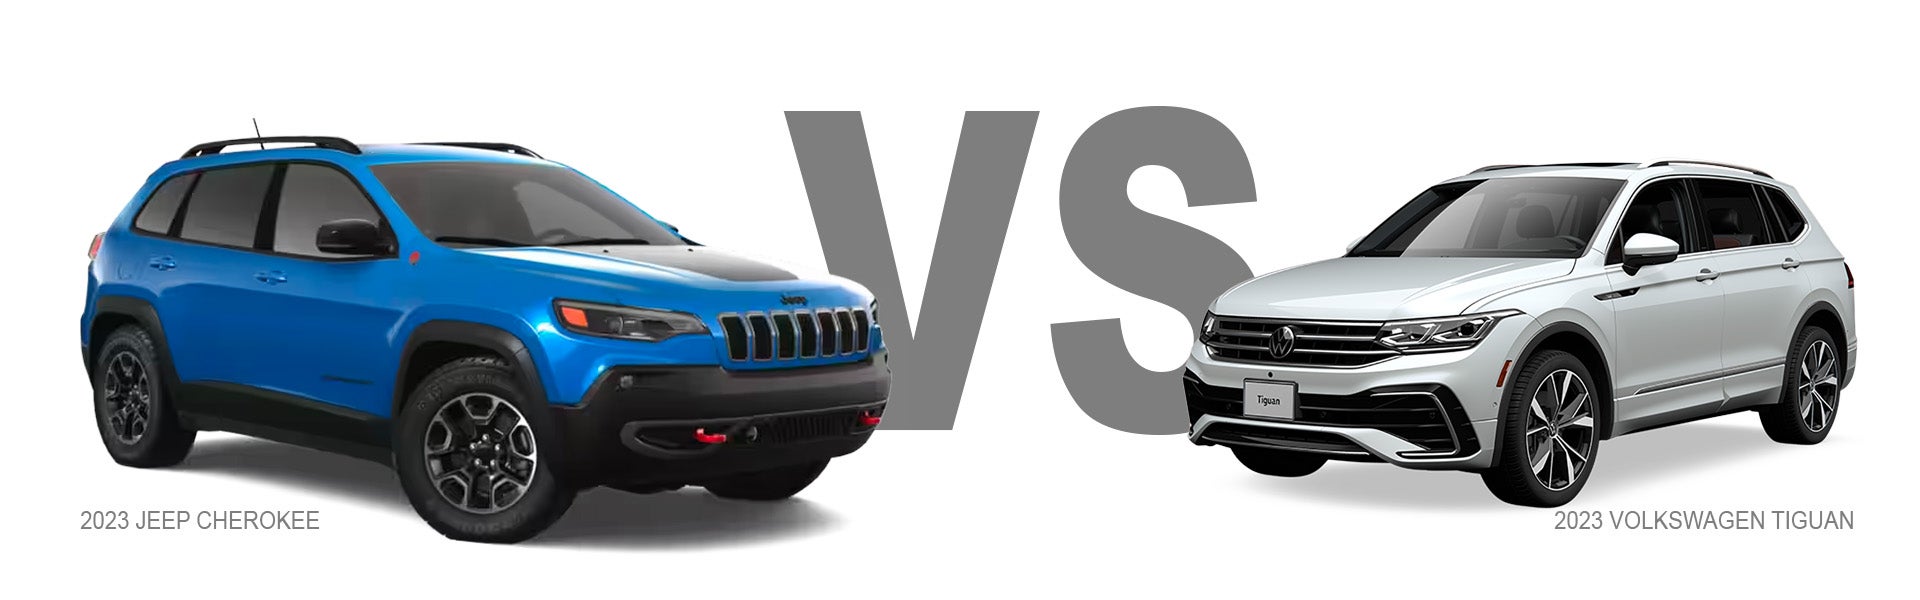 Jeep Compass vs Toyota RAV4 Compact CUV Comparison